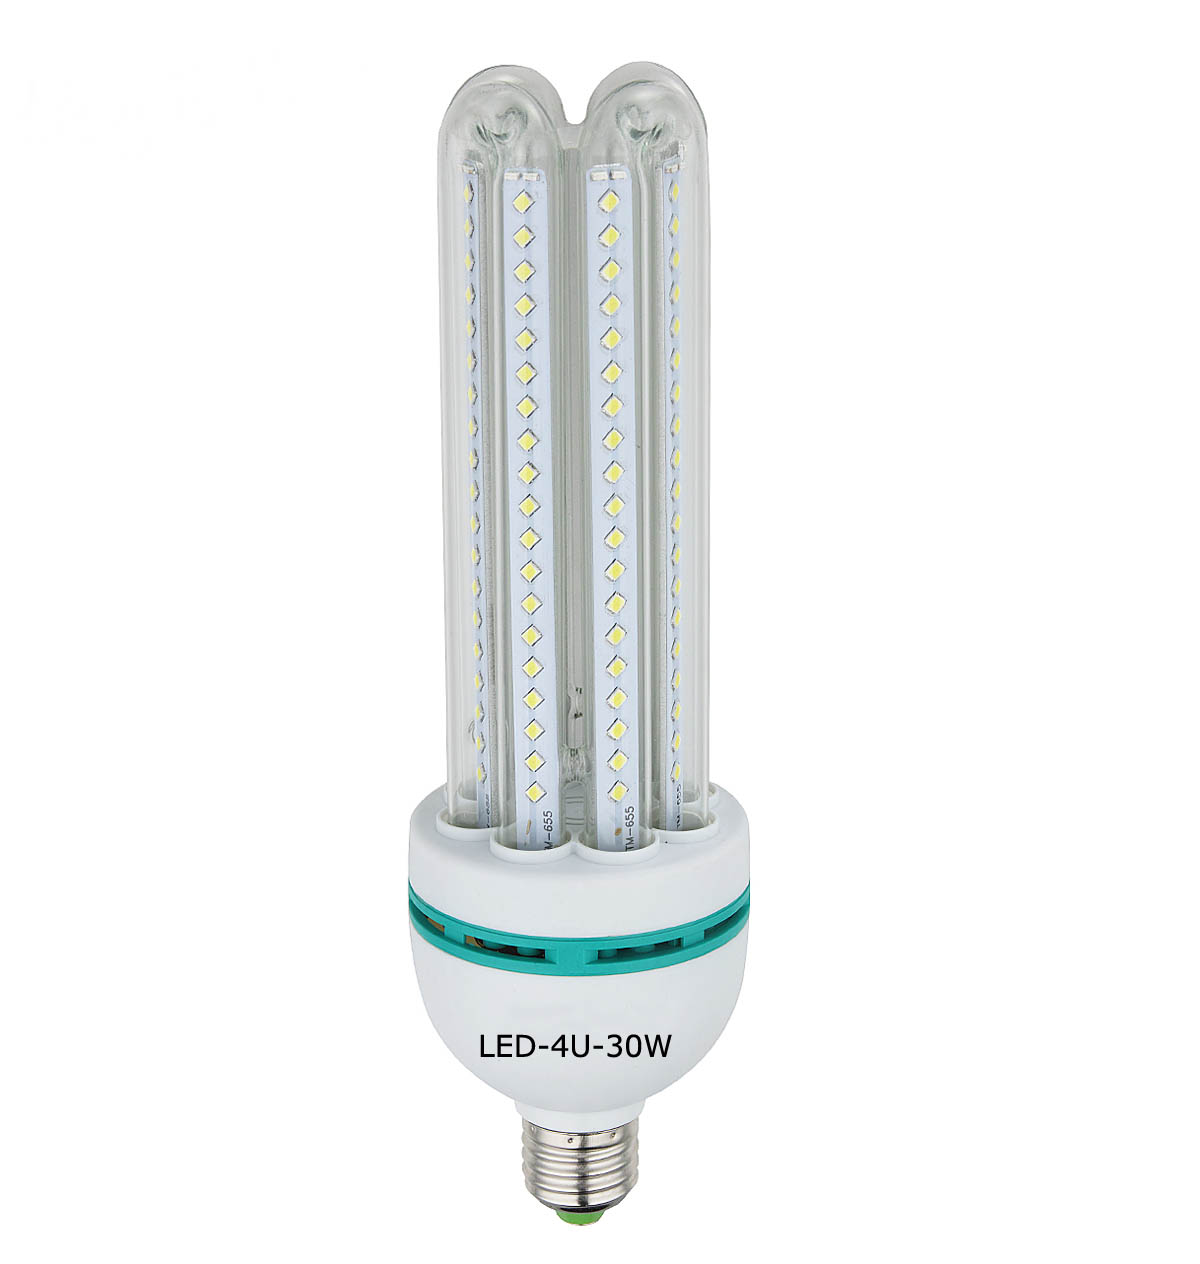 LED corn 4U lamp 30W